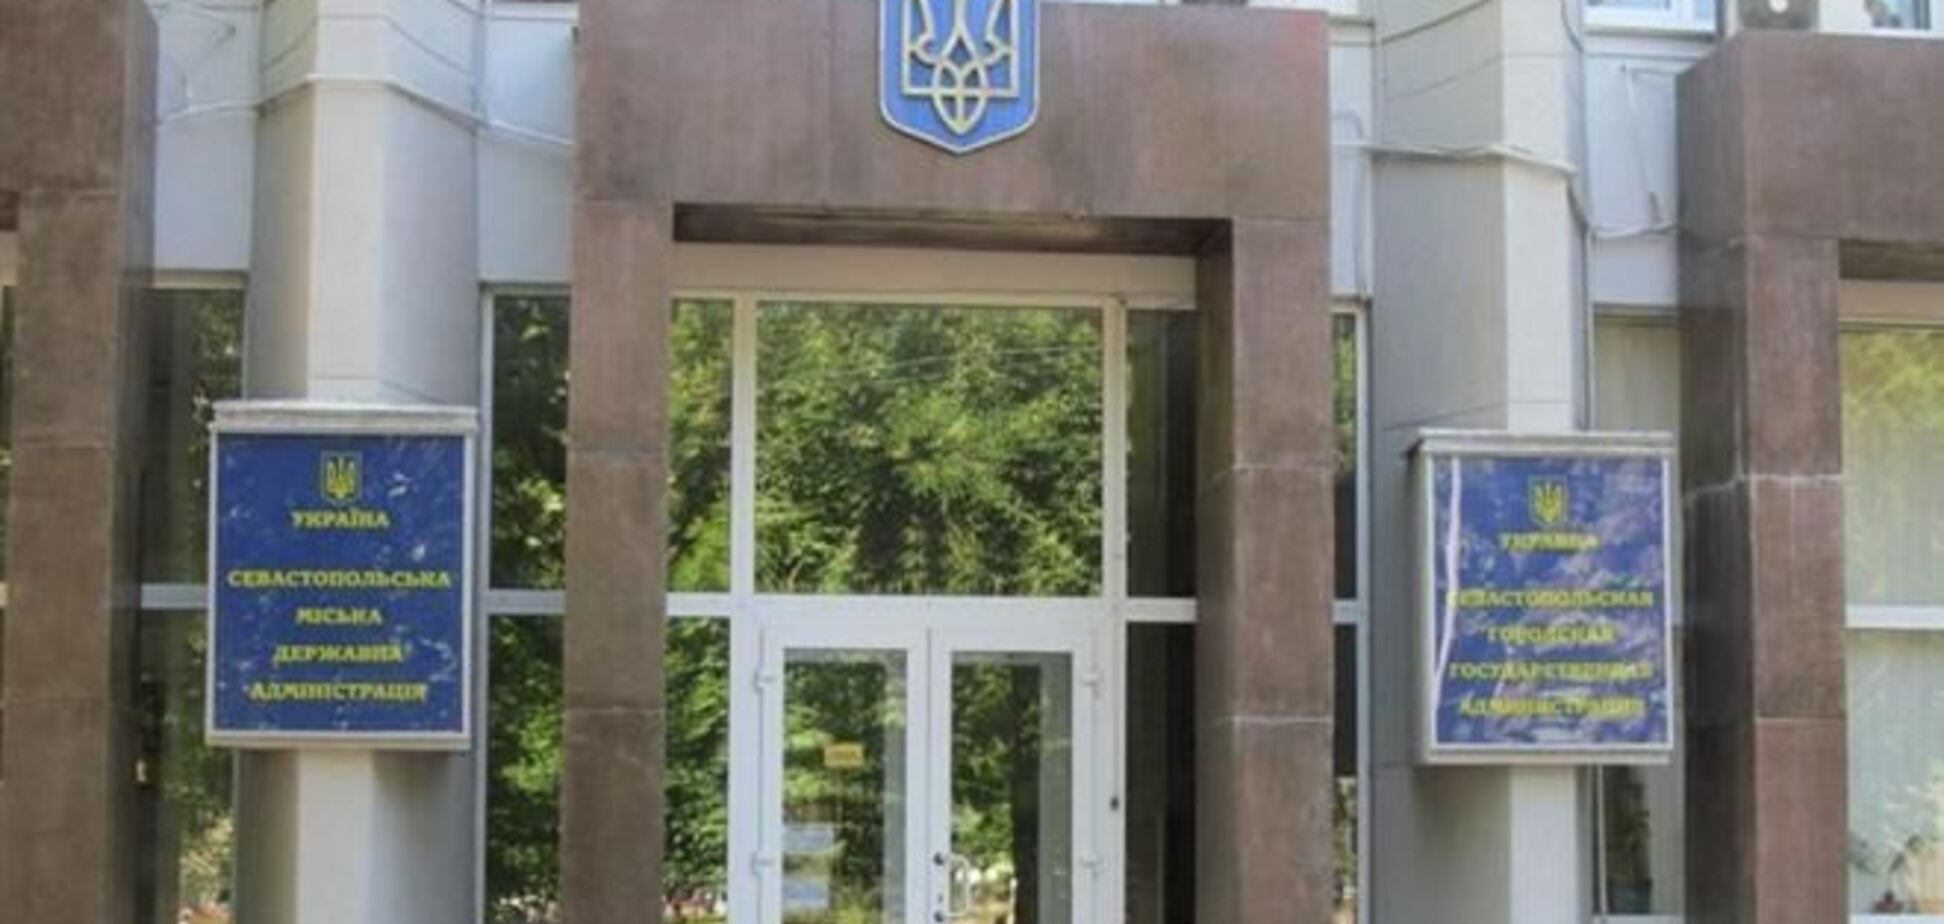 Служащие Севастопольской горадминистрации увольняются